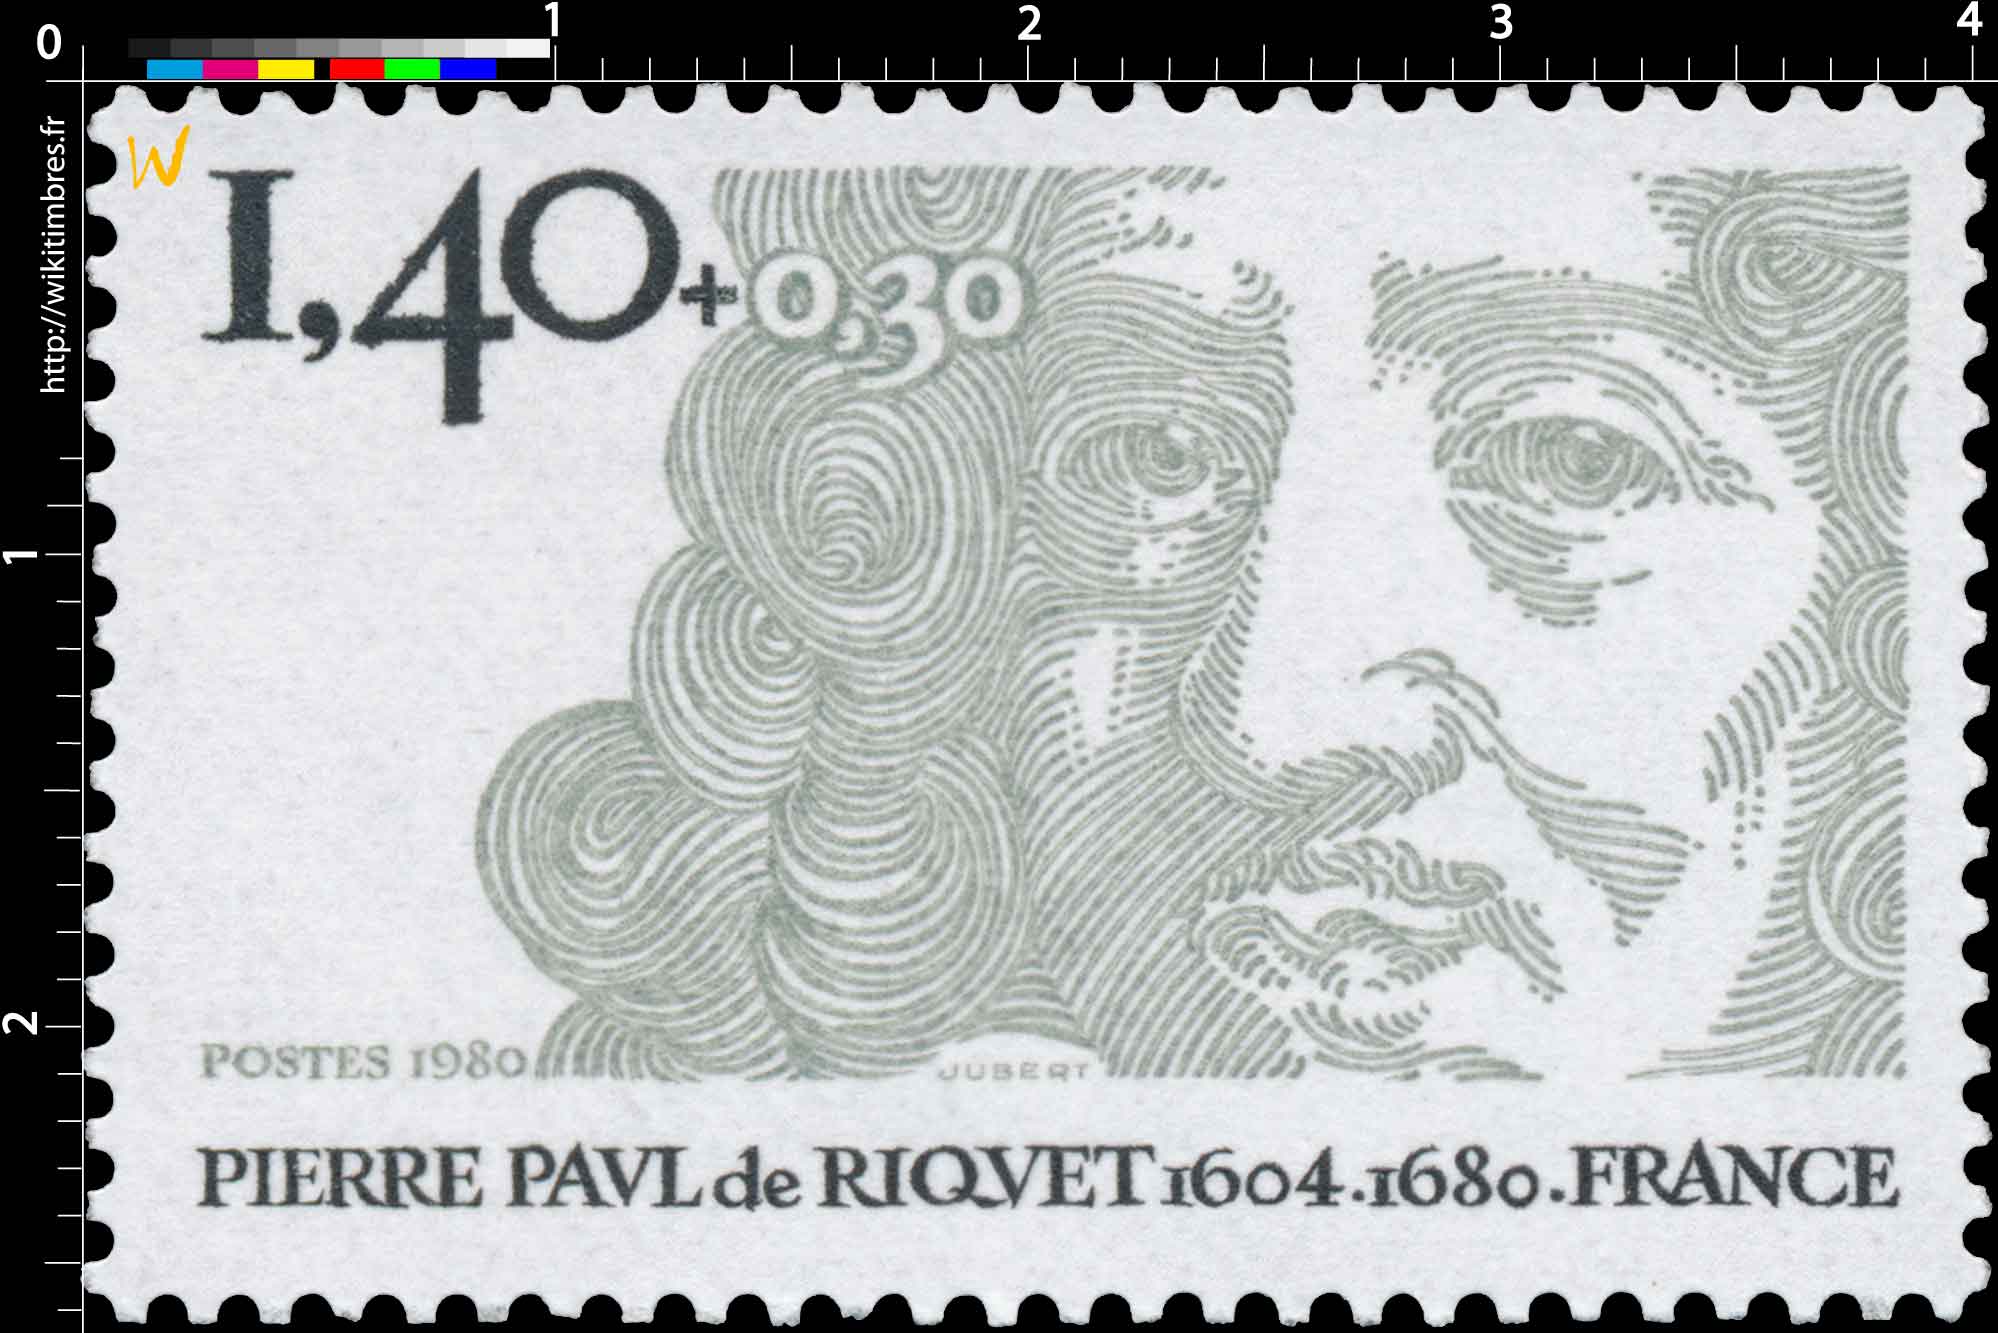 1980 PIERRE PAUL de RIQUET 1604-1680